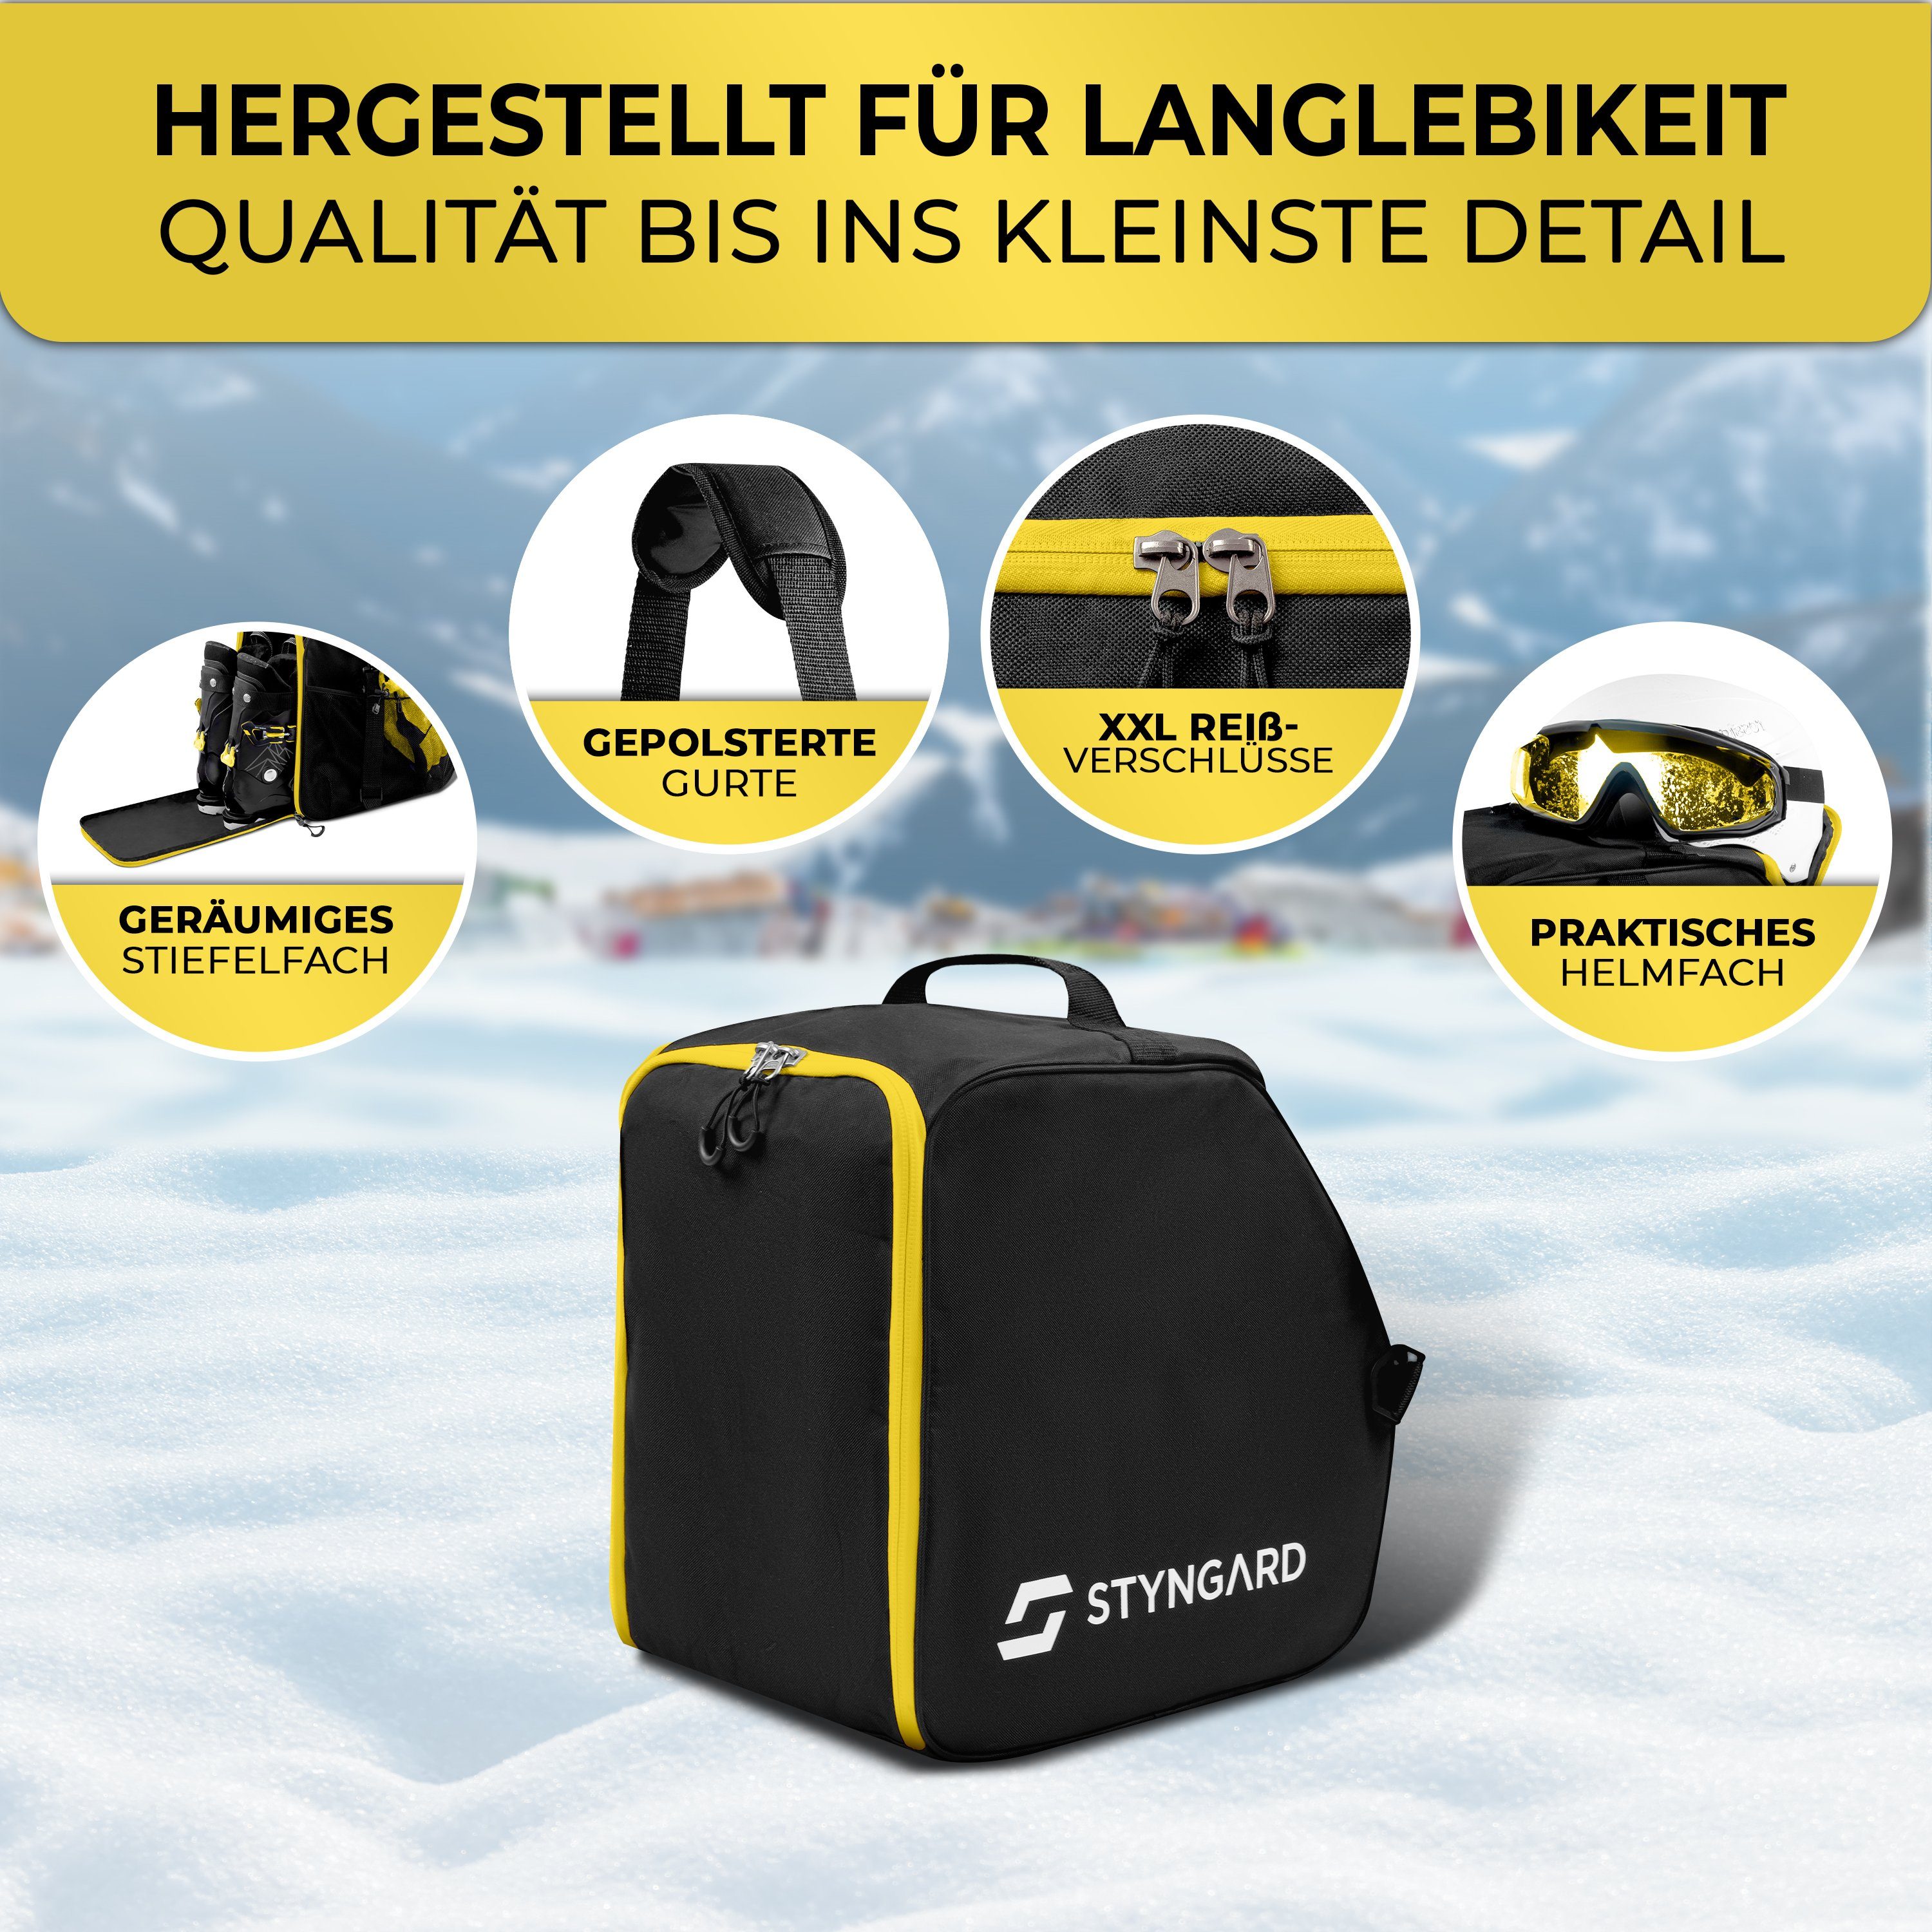 Styngard Skitasche ZERMATT, Skischuhtasche und Helmfach mit L] [40 Schwarz-Gelb Stiefelfach